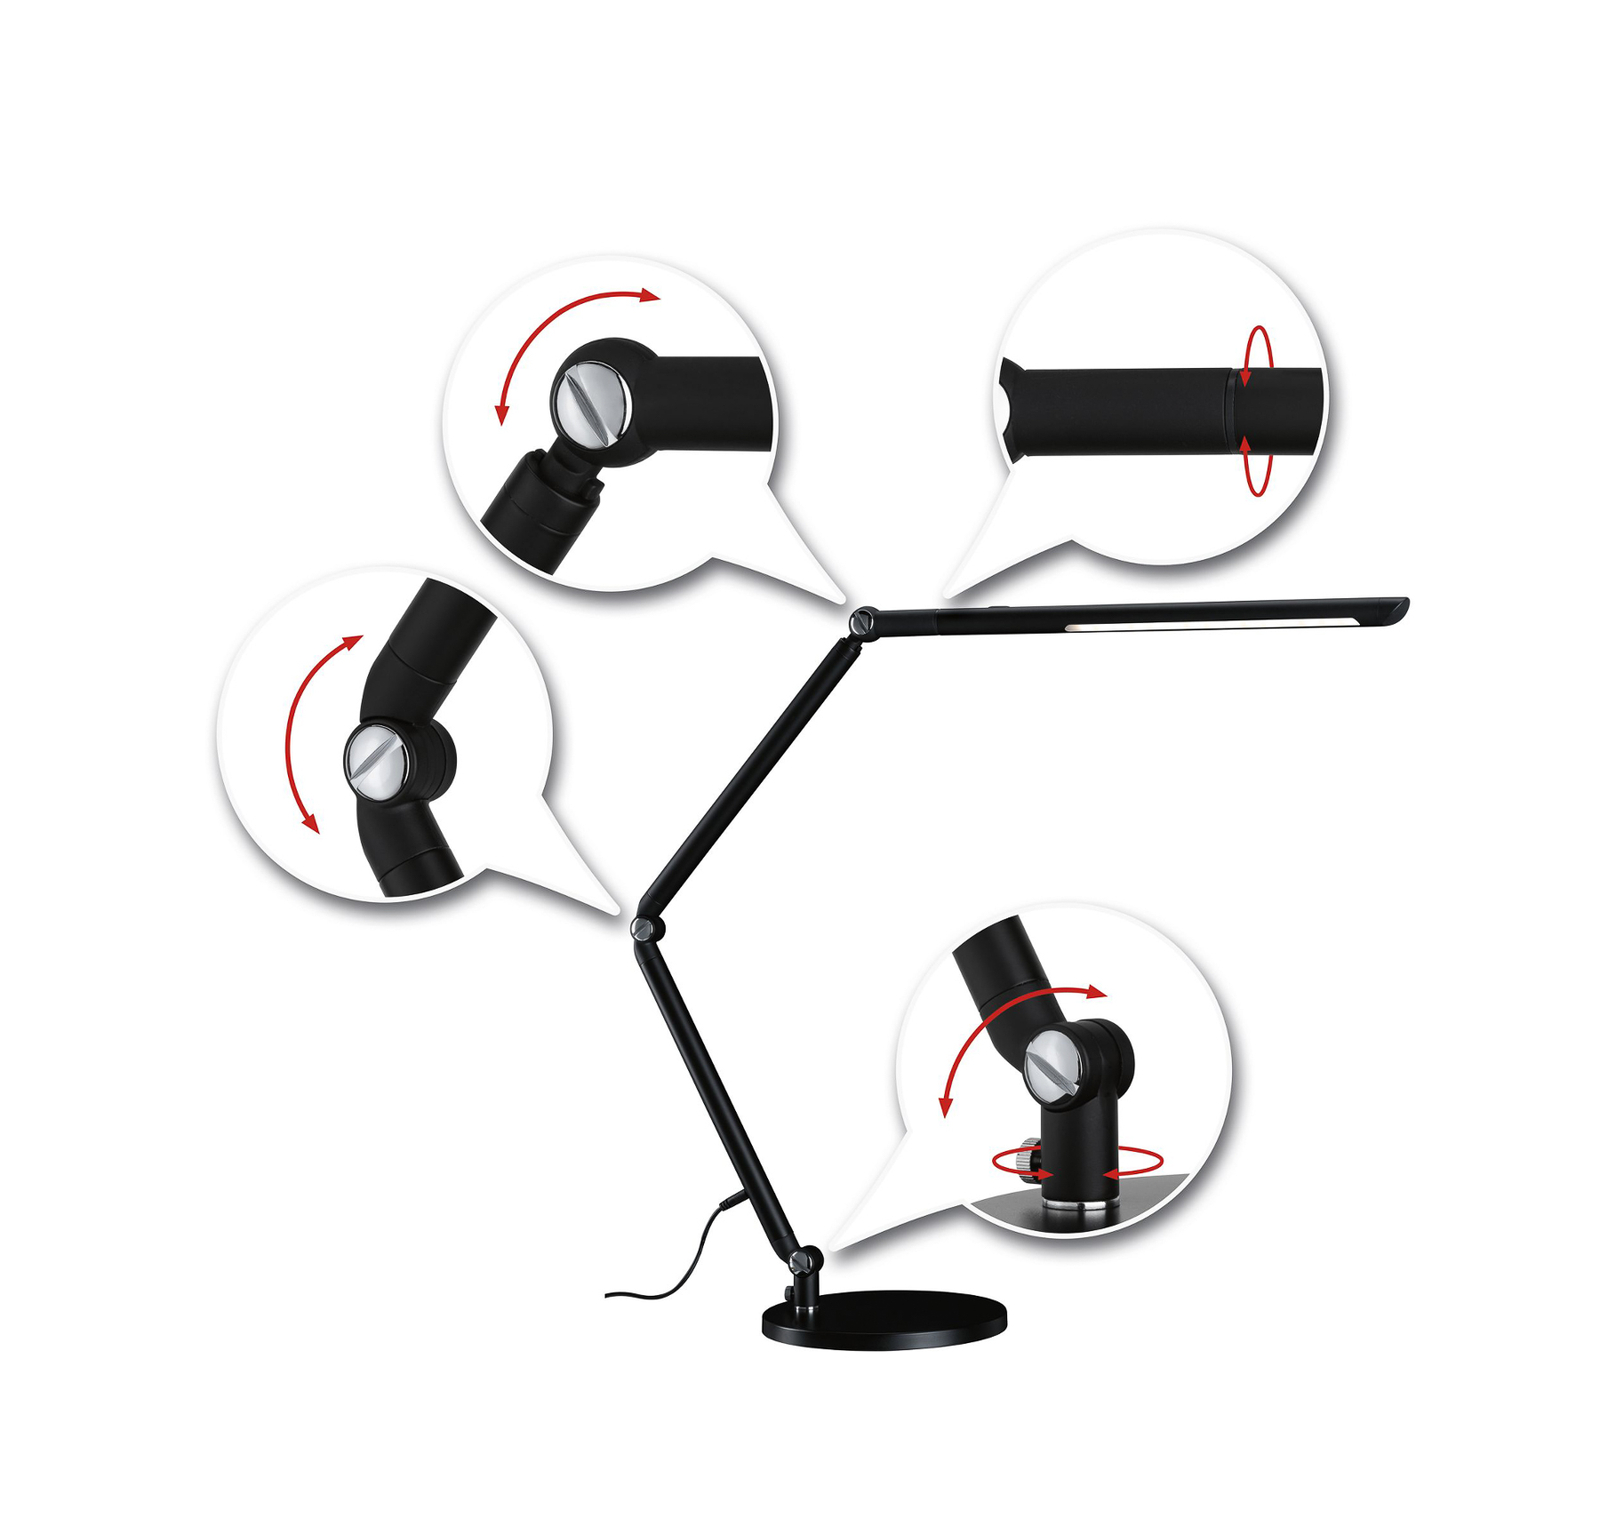 Paulmann FlexBar LED-Schreibtischlampe schwarz